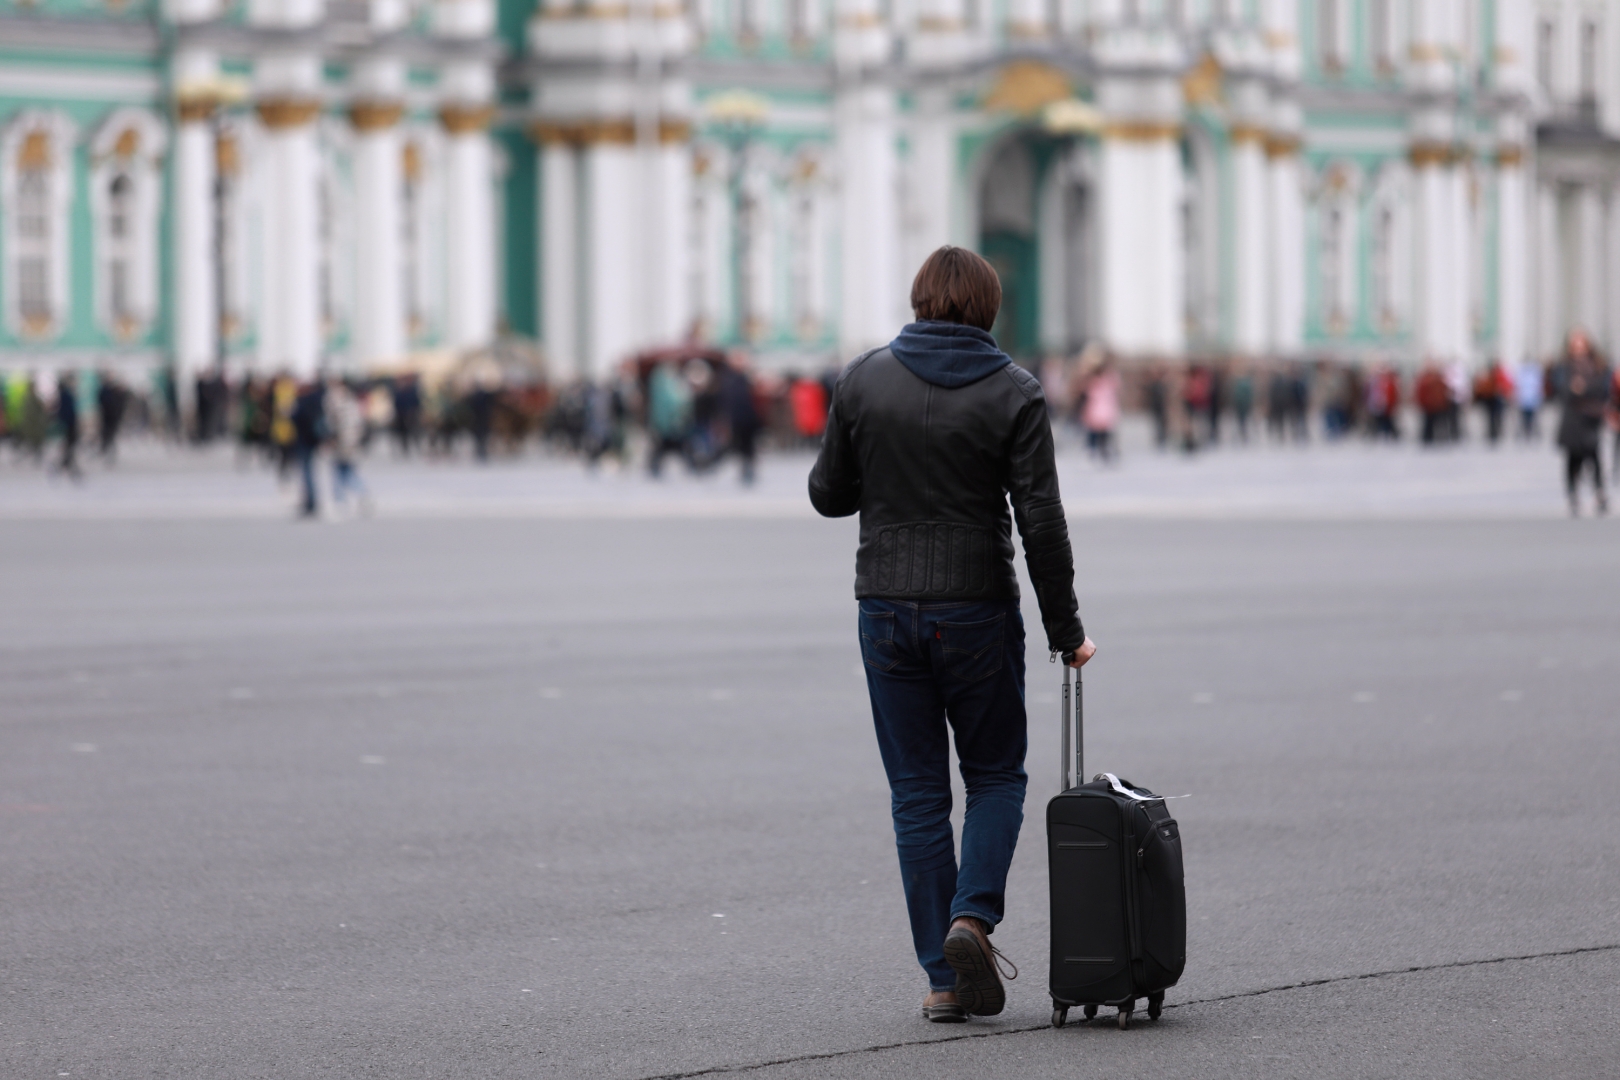 РФ отстаёт по всем показателям эффективности туризма — глава Ростуризма